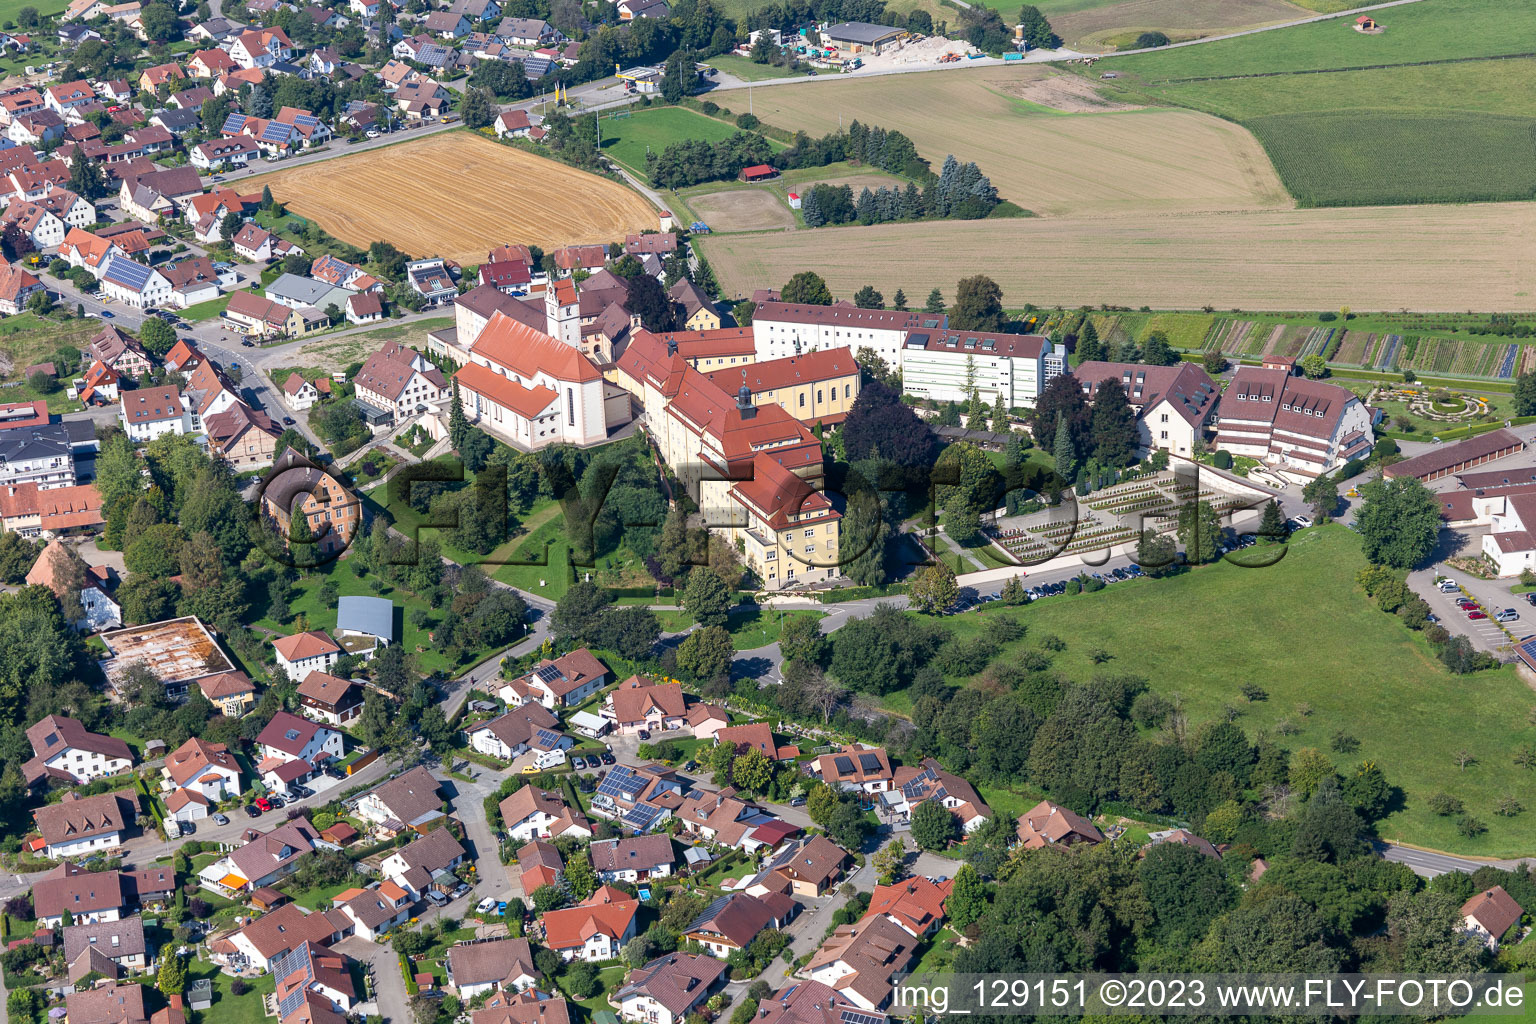 Vue aérienne de Ensemble immobilier du monastère Reute à le quartier Reute in Bad Waldsee dans le département Bade-Wurtemberg, Allemagne